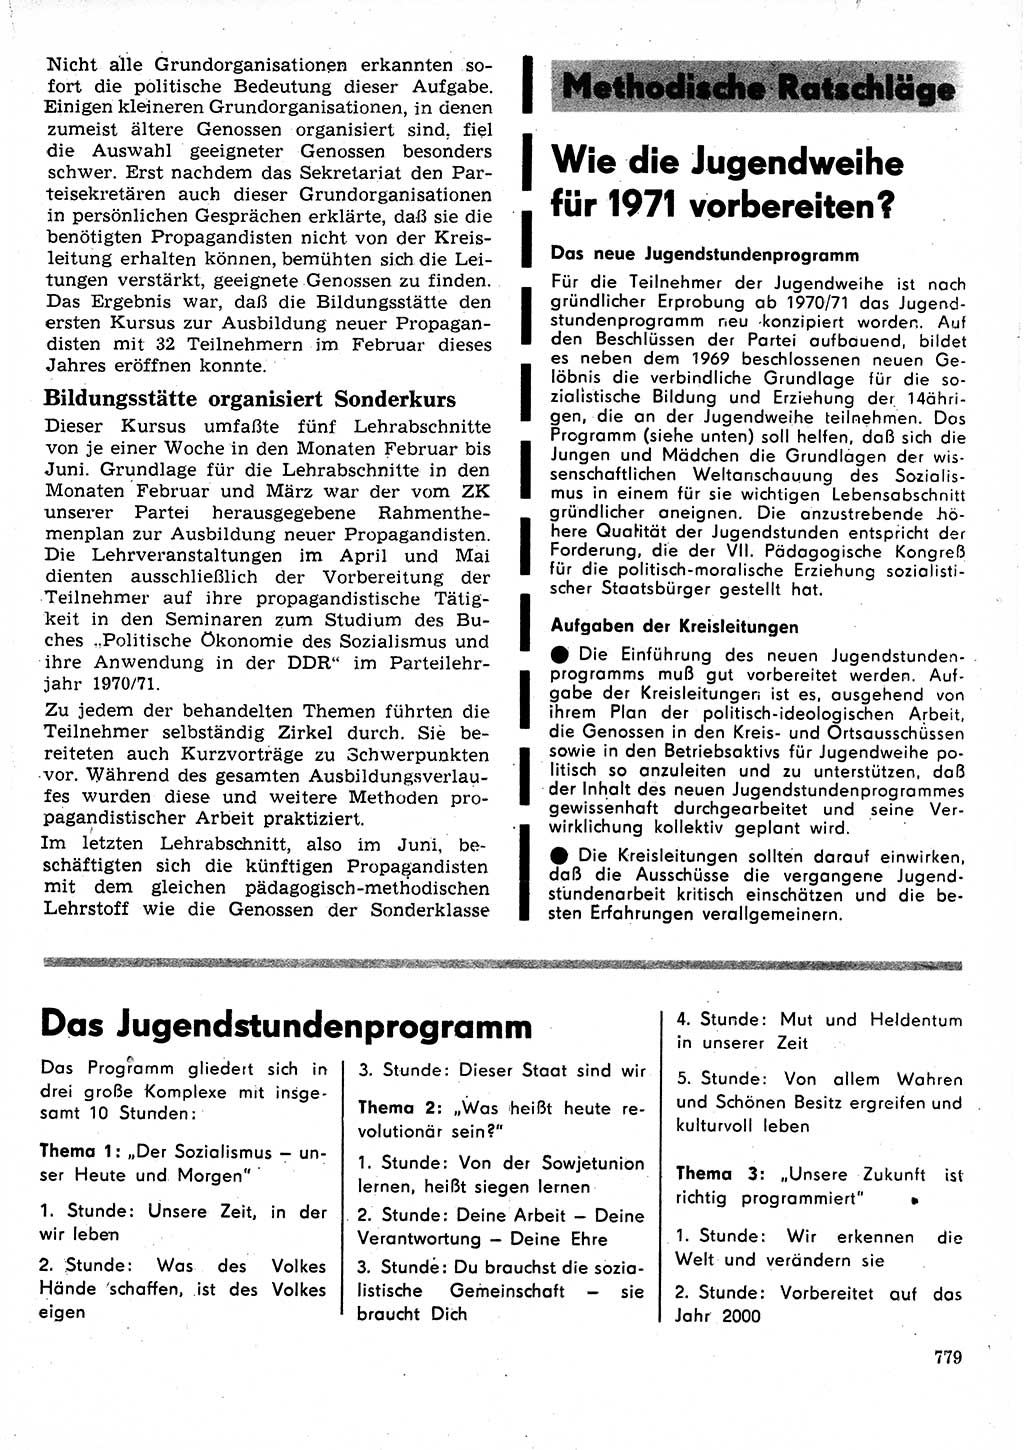 Neuer Weg (NW), Organ des Zentralkomitees (ZK) der SED (Sozialistische Einheitspartei Deutschlands) für Fragen des Parteilebens, 25. Jahrgang [Deutsche Demokratische Republik (DDR)] 1970, Seite 779 (NW ZK SED DDR 1970, S. 779)